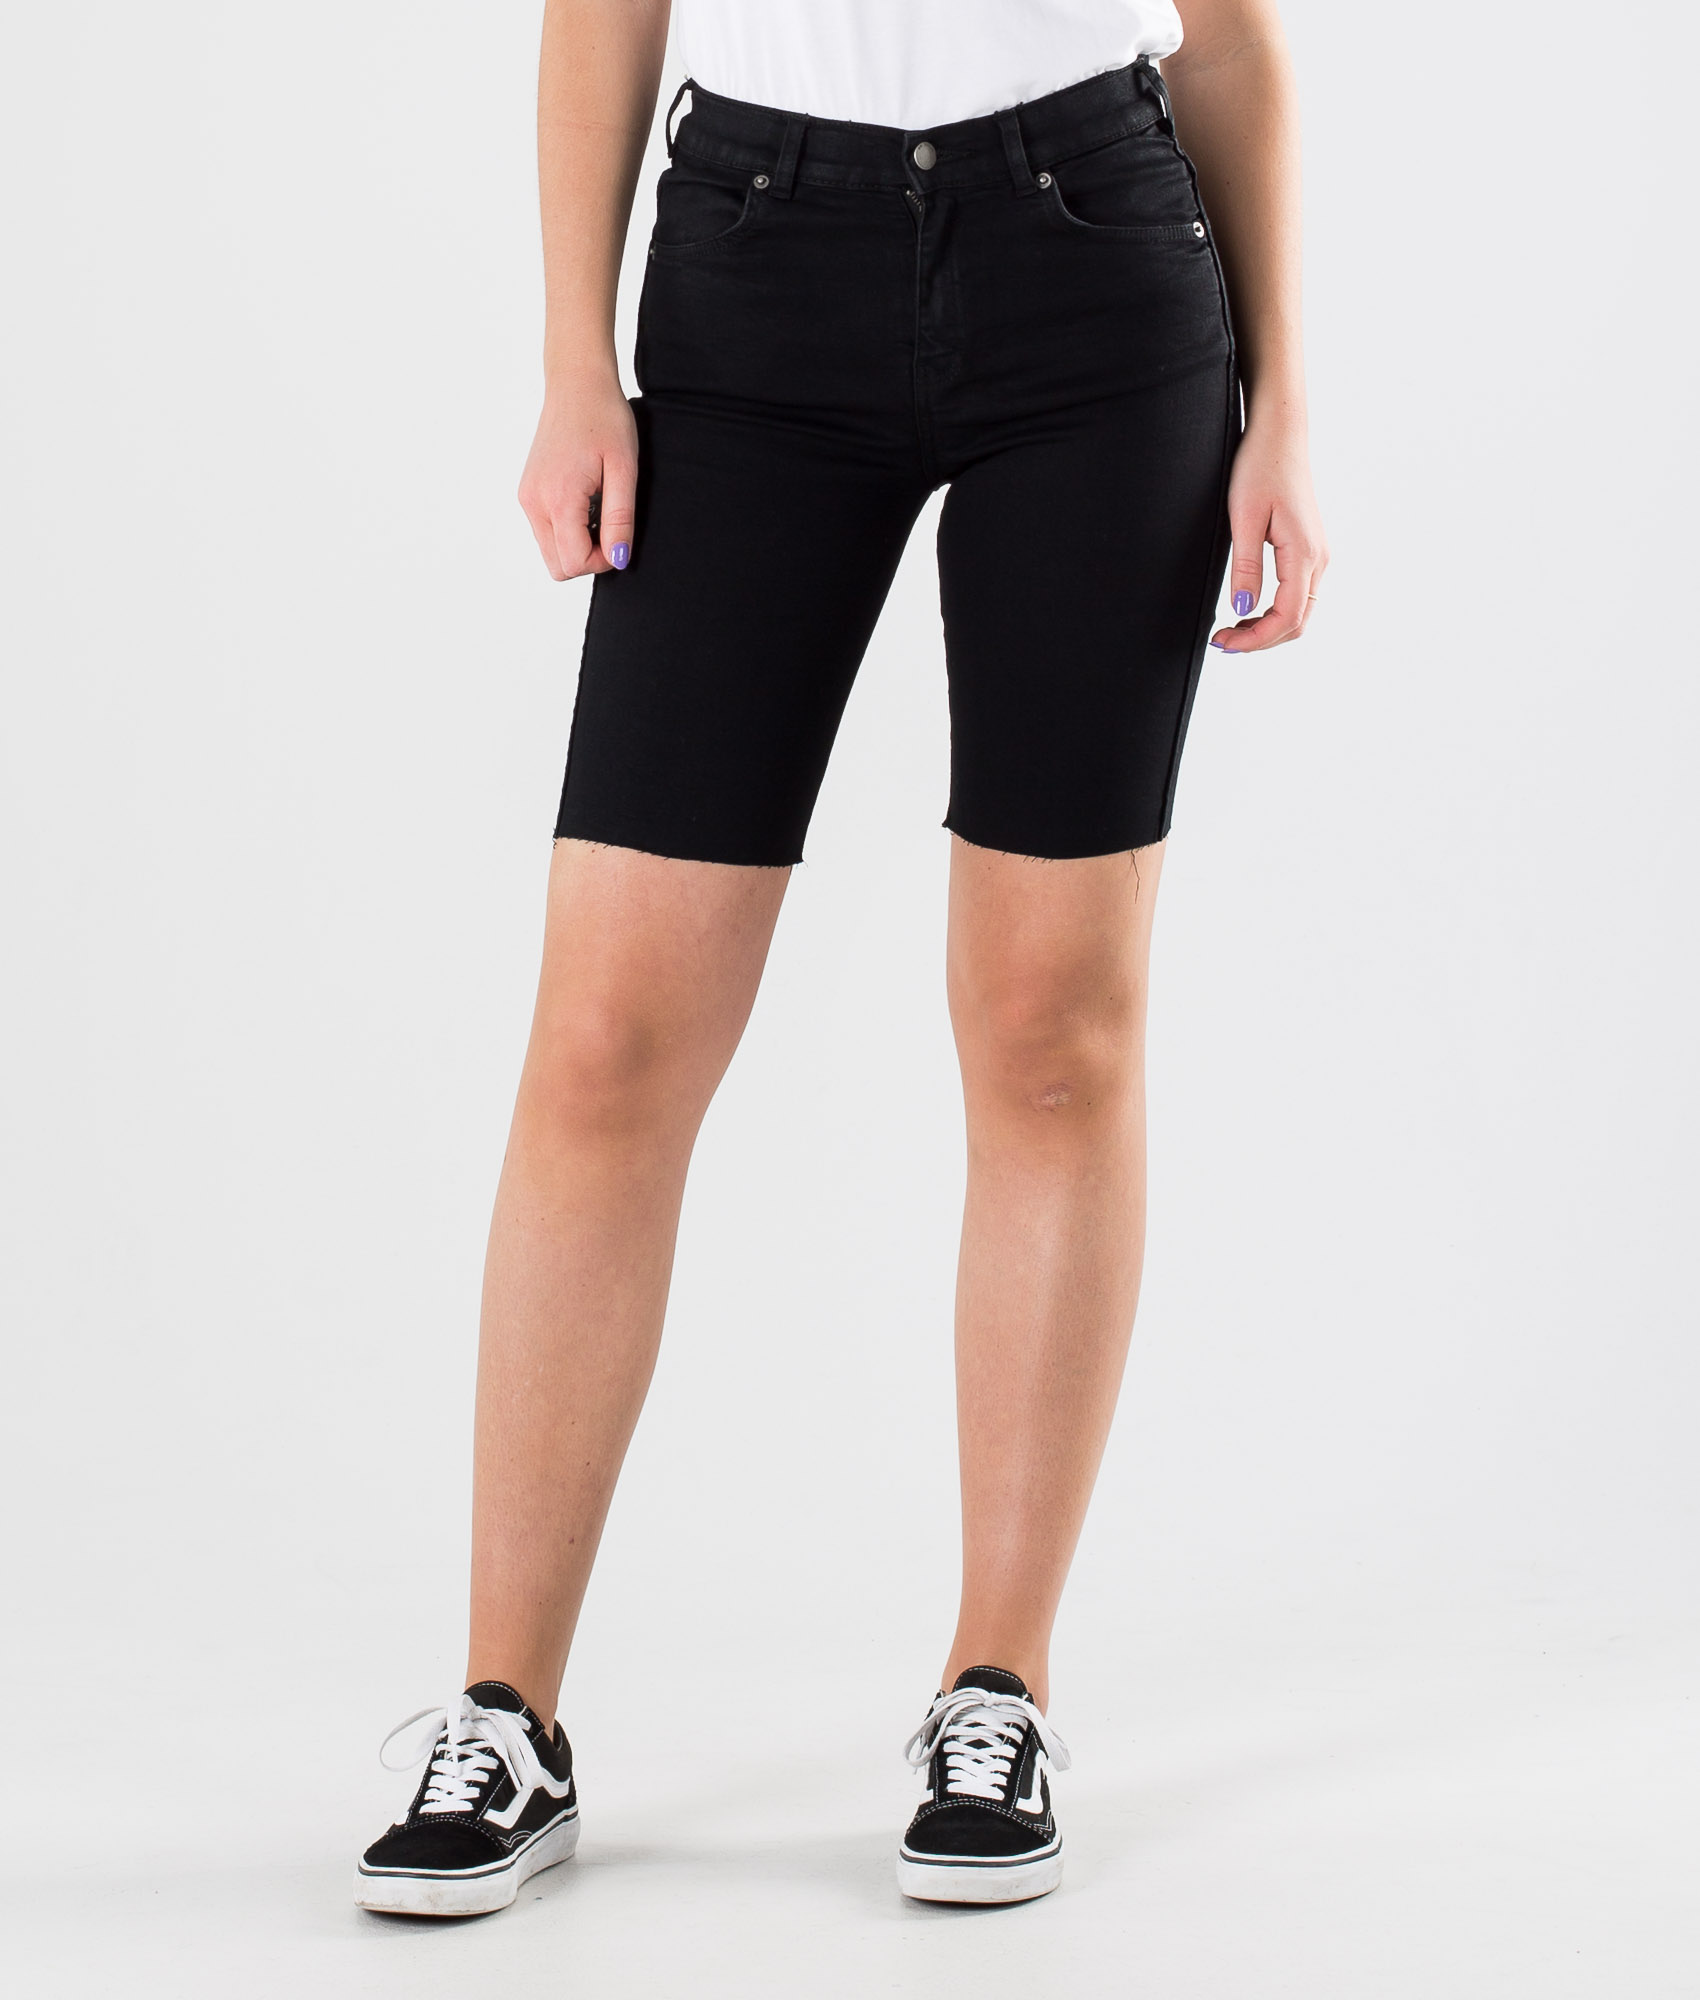 black denim cycling shorts